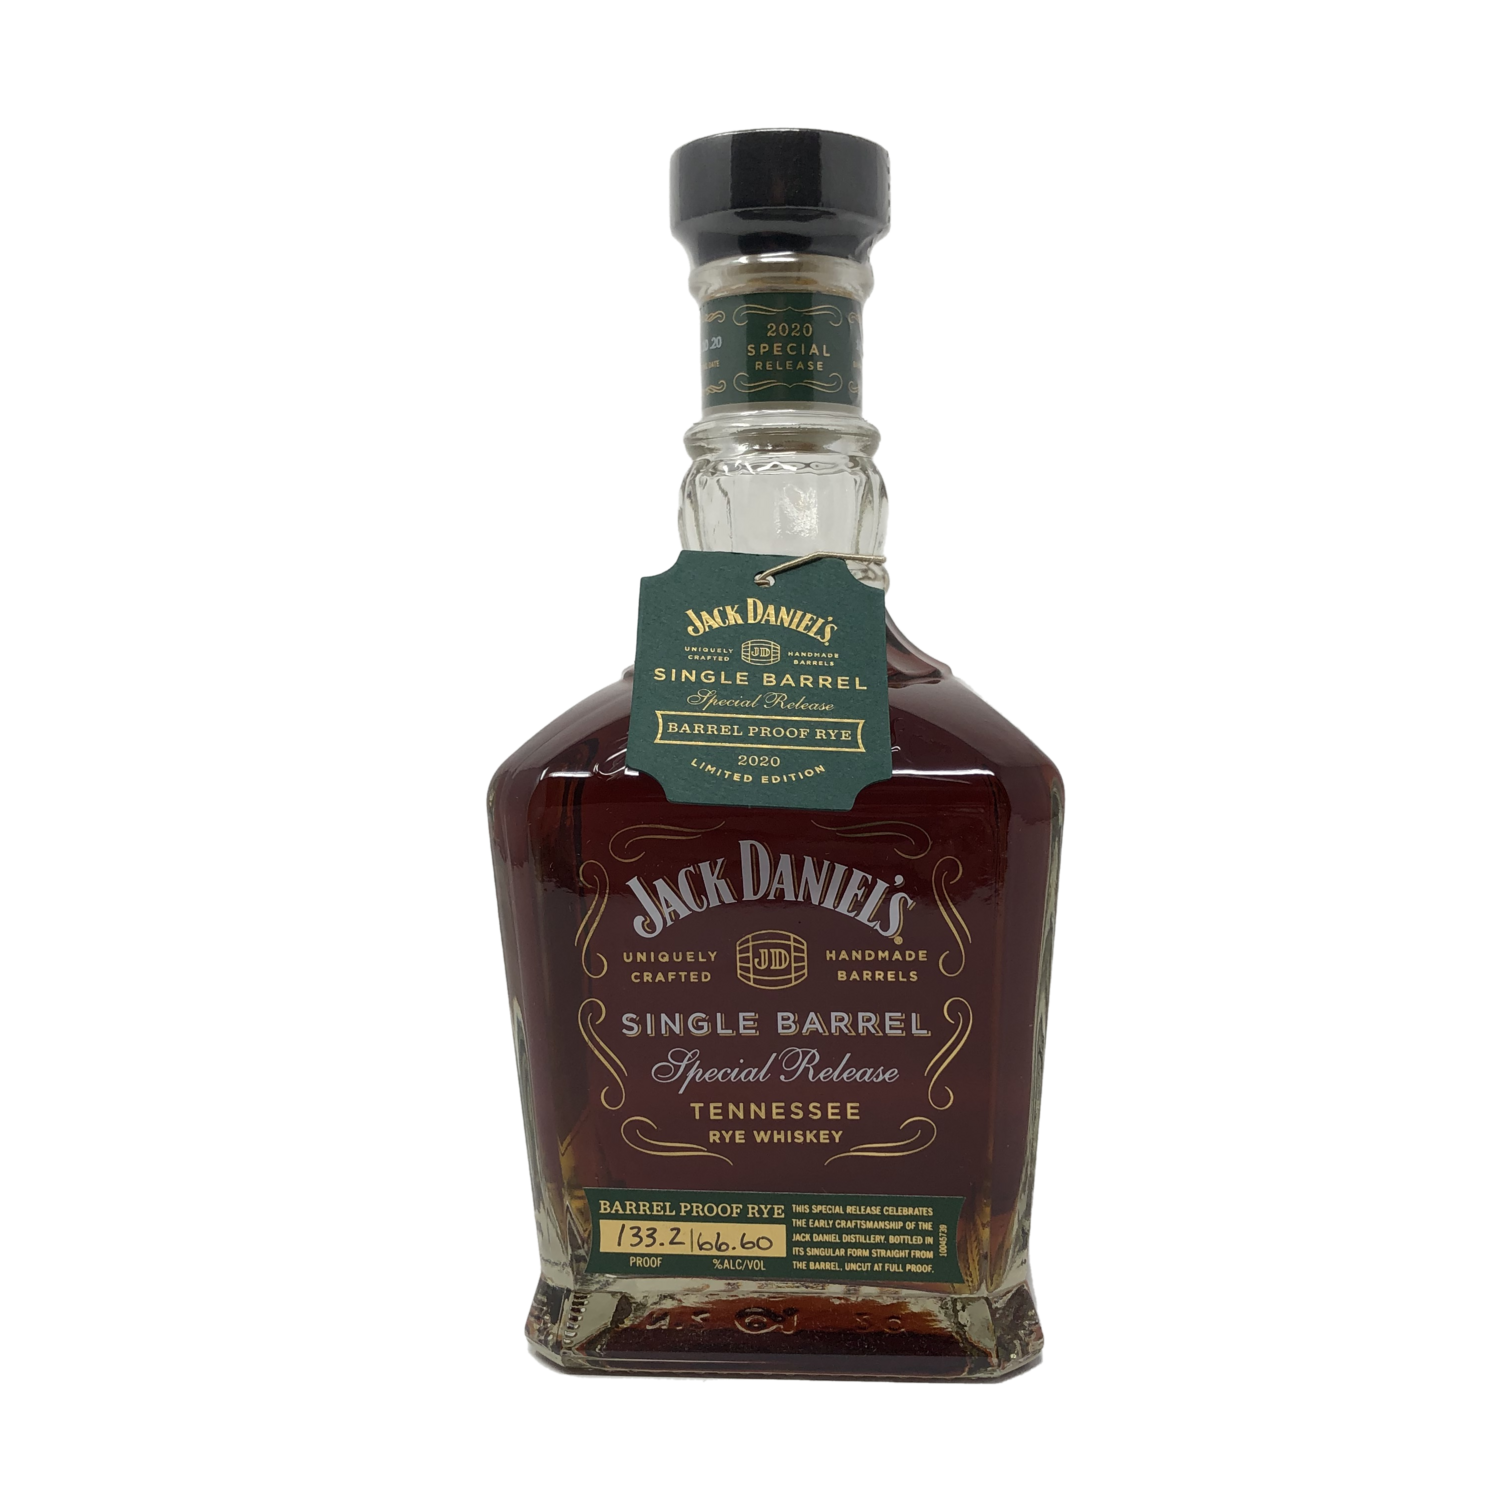 Jack Daniel's Single Barrel Special Release Barrel Proof Rye 2020